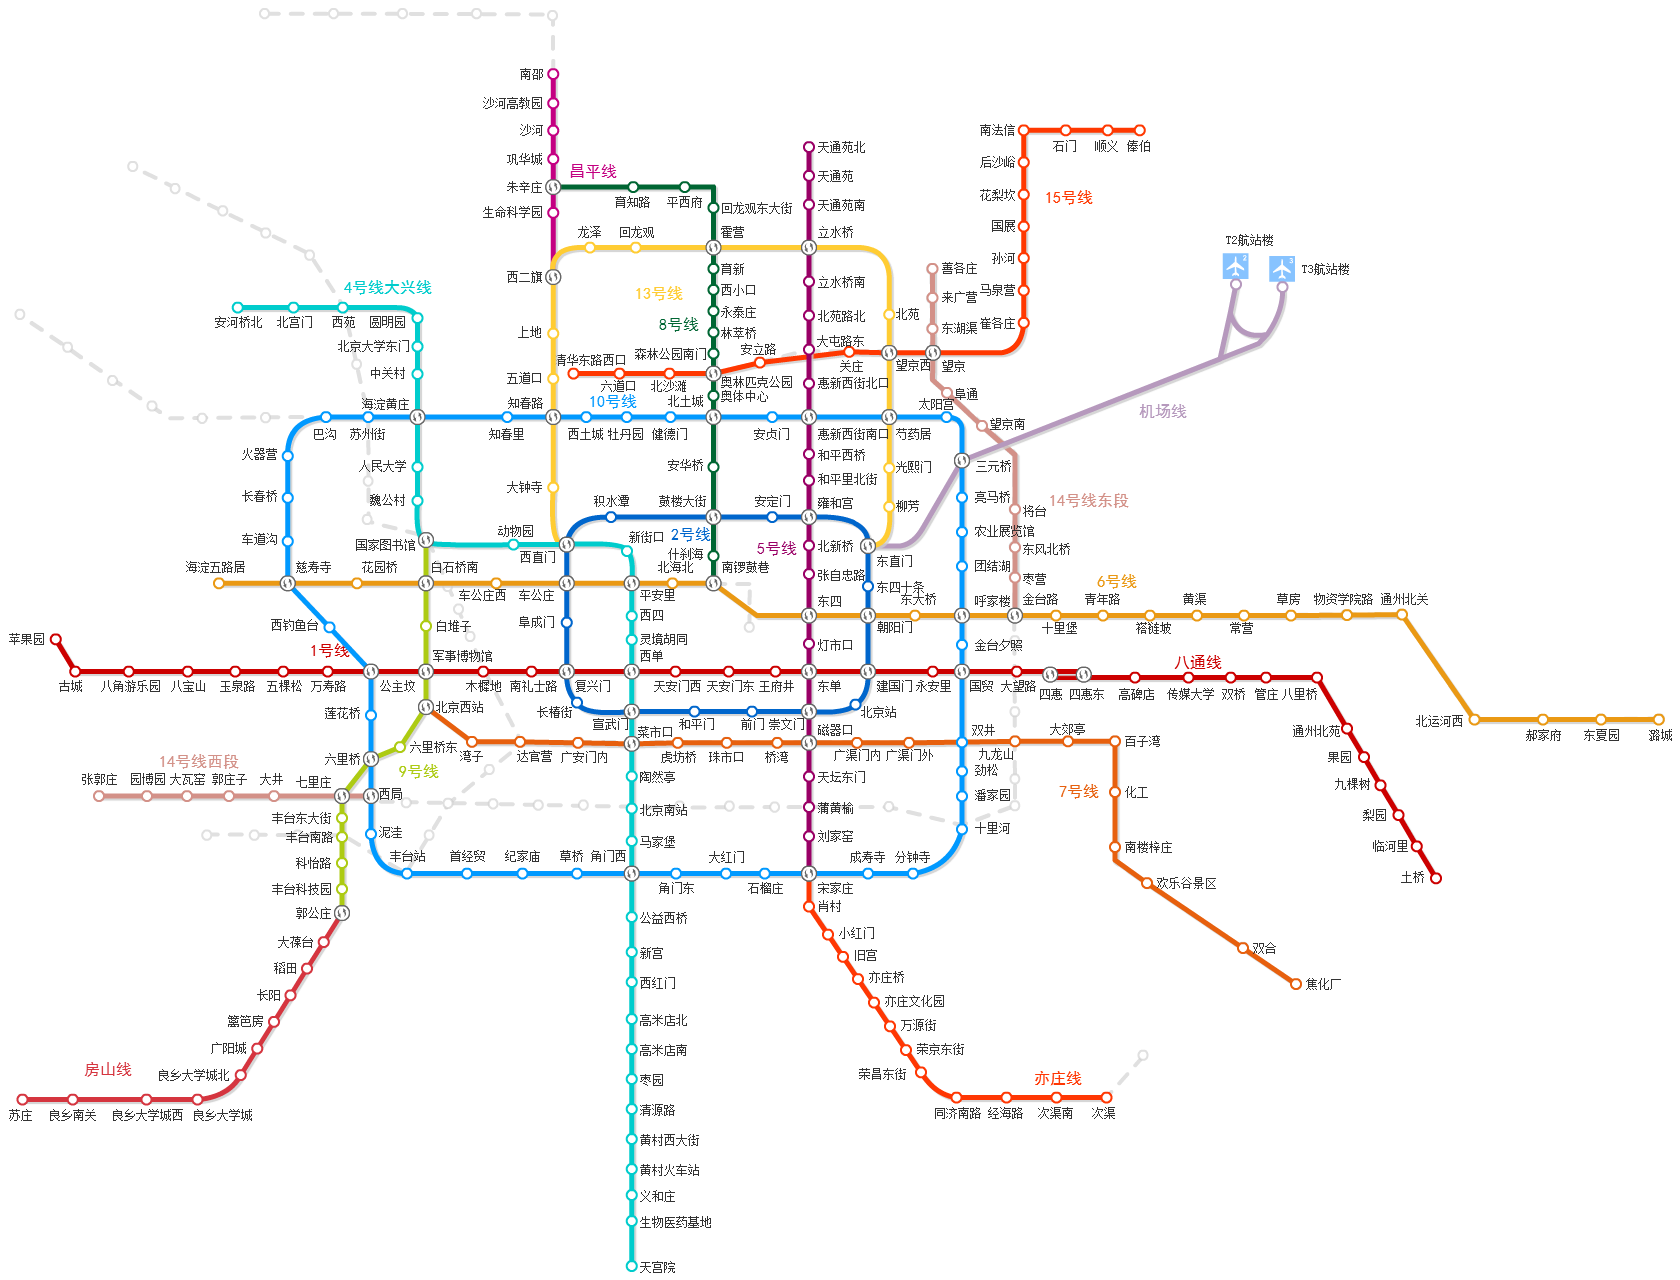 北京地铁运营线路图2017年版_京城网